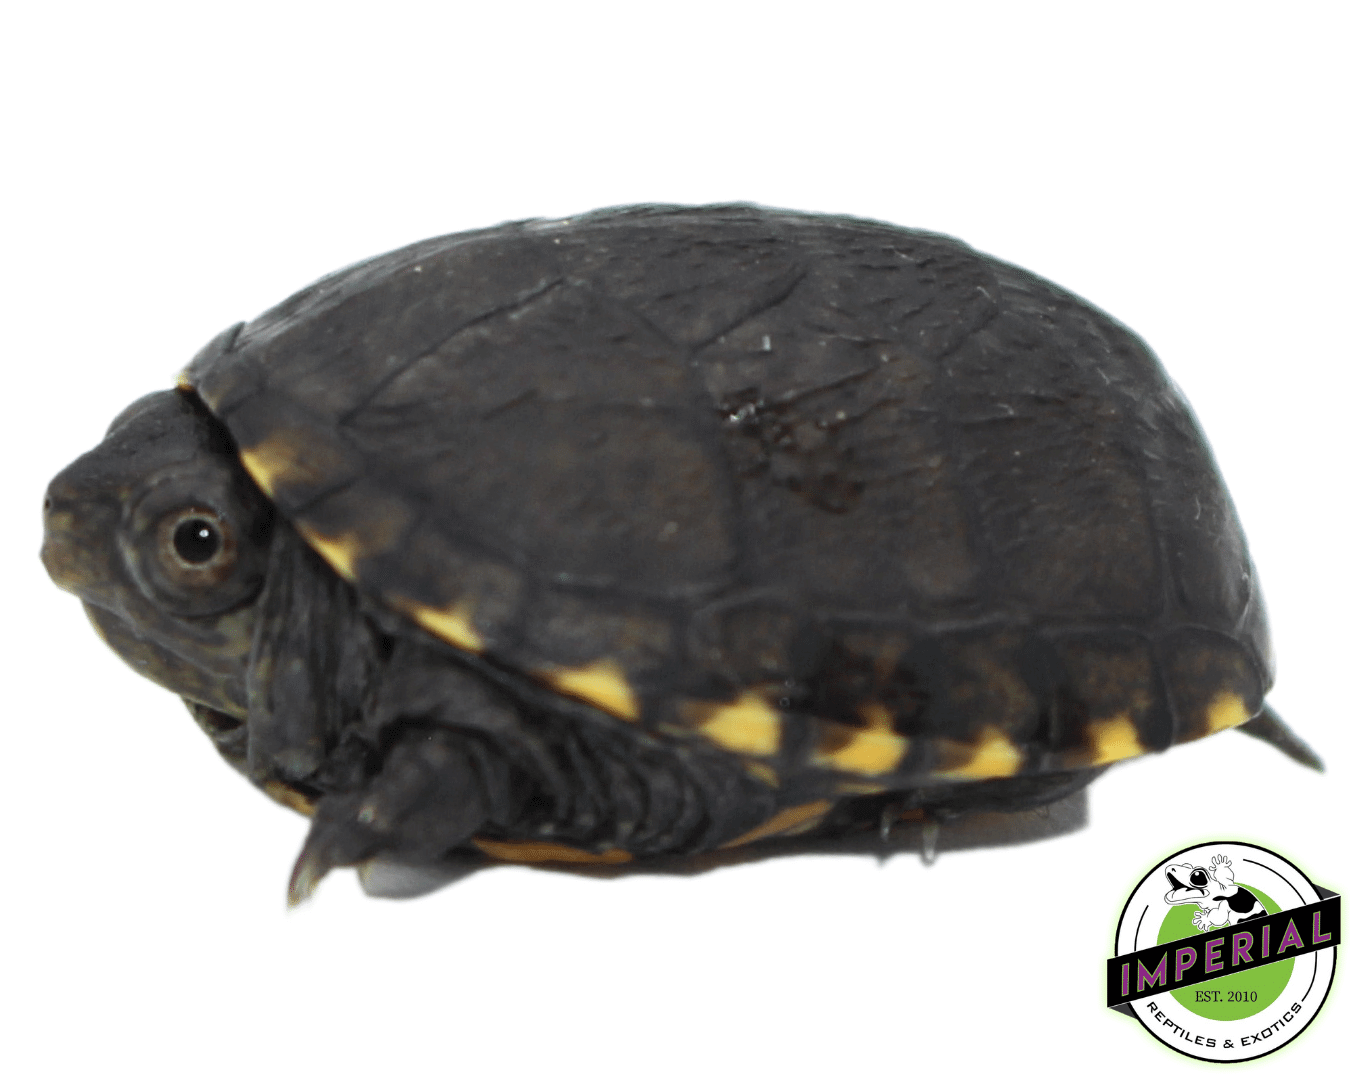 eastern mud turtle for sale, buy reptiles online